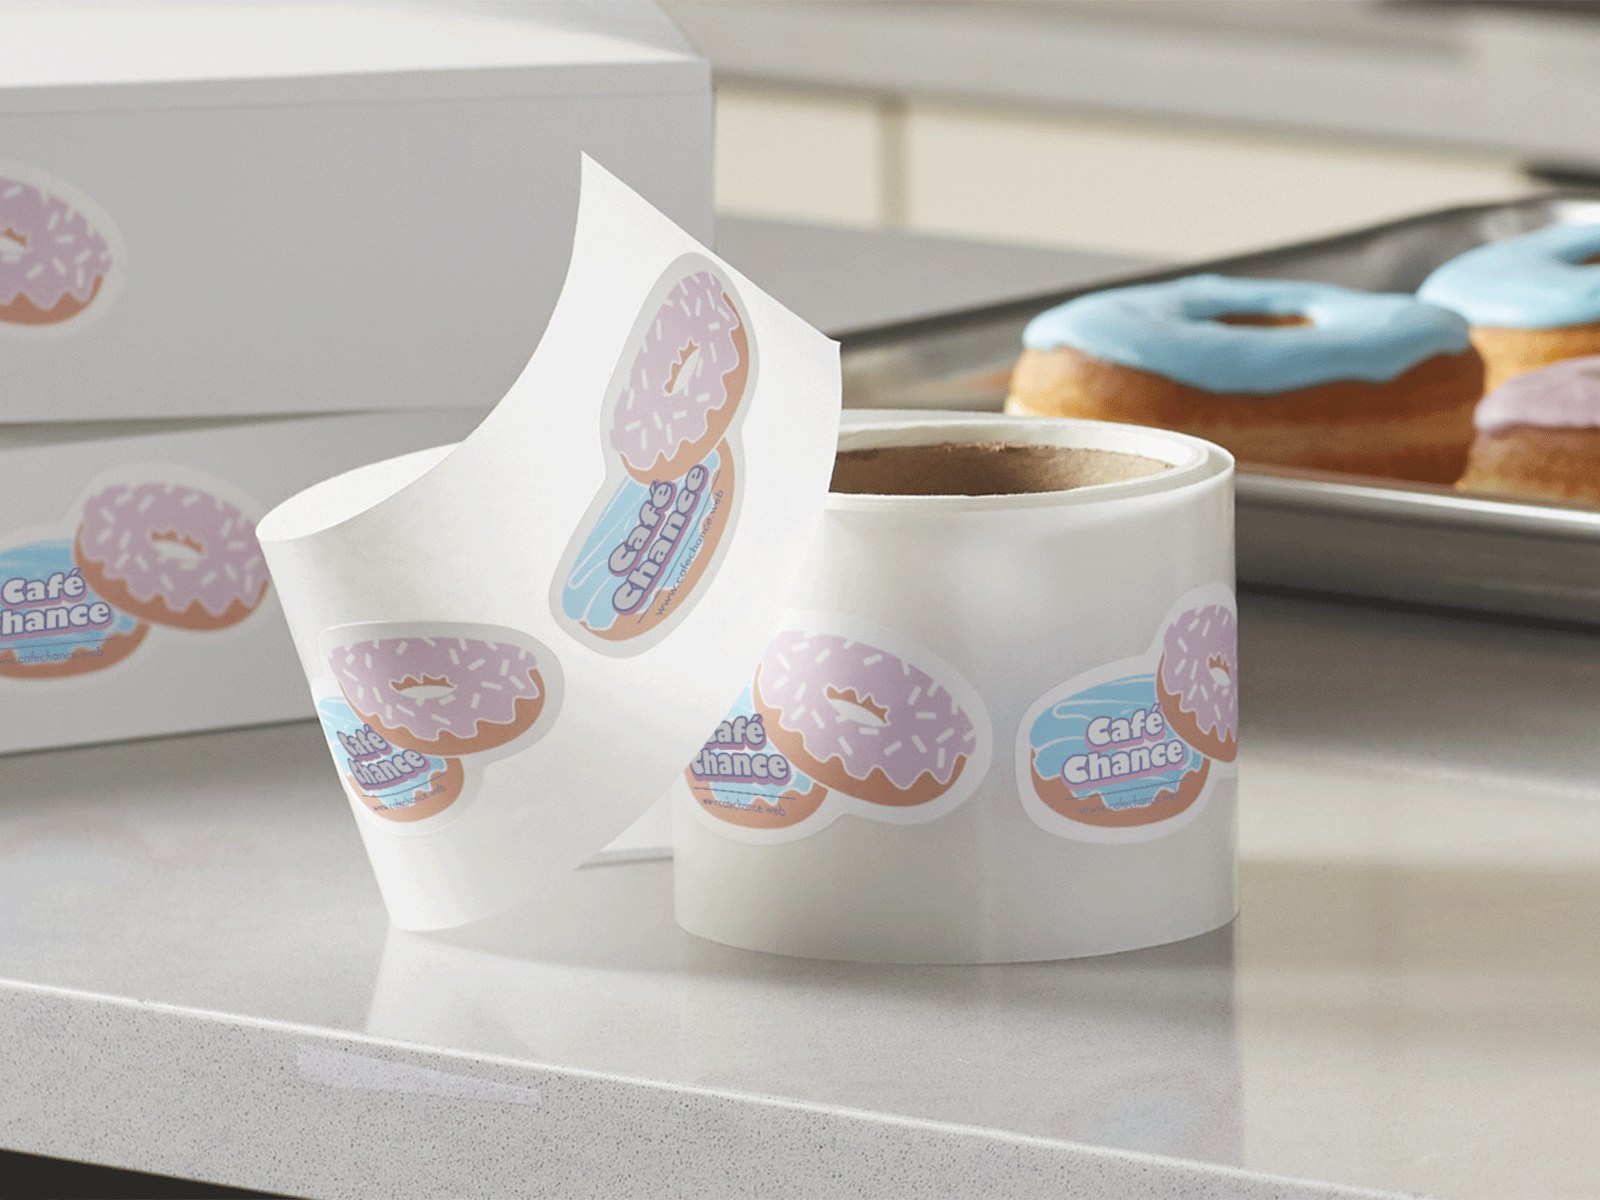 Placé sur un comptoir, rouleau contenant des étiquettes découpées à la forme de deux beignets empilés de manière décalée, face à deux boîtes de beignets, et un plateau de beignets.